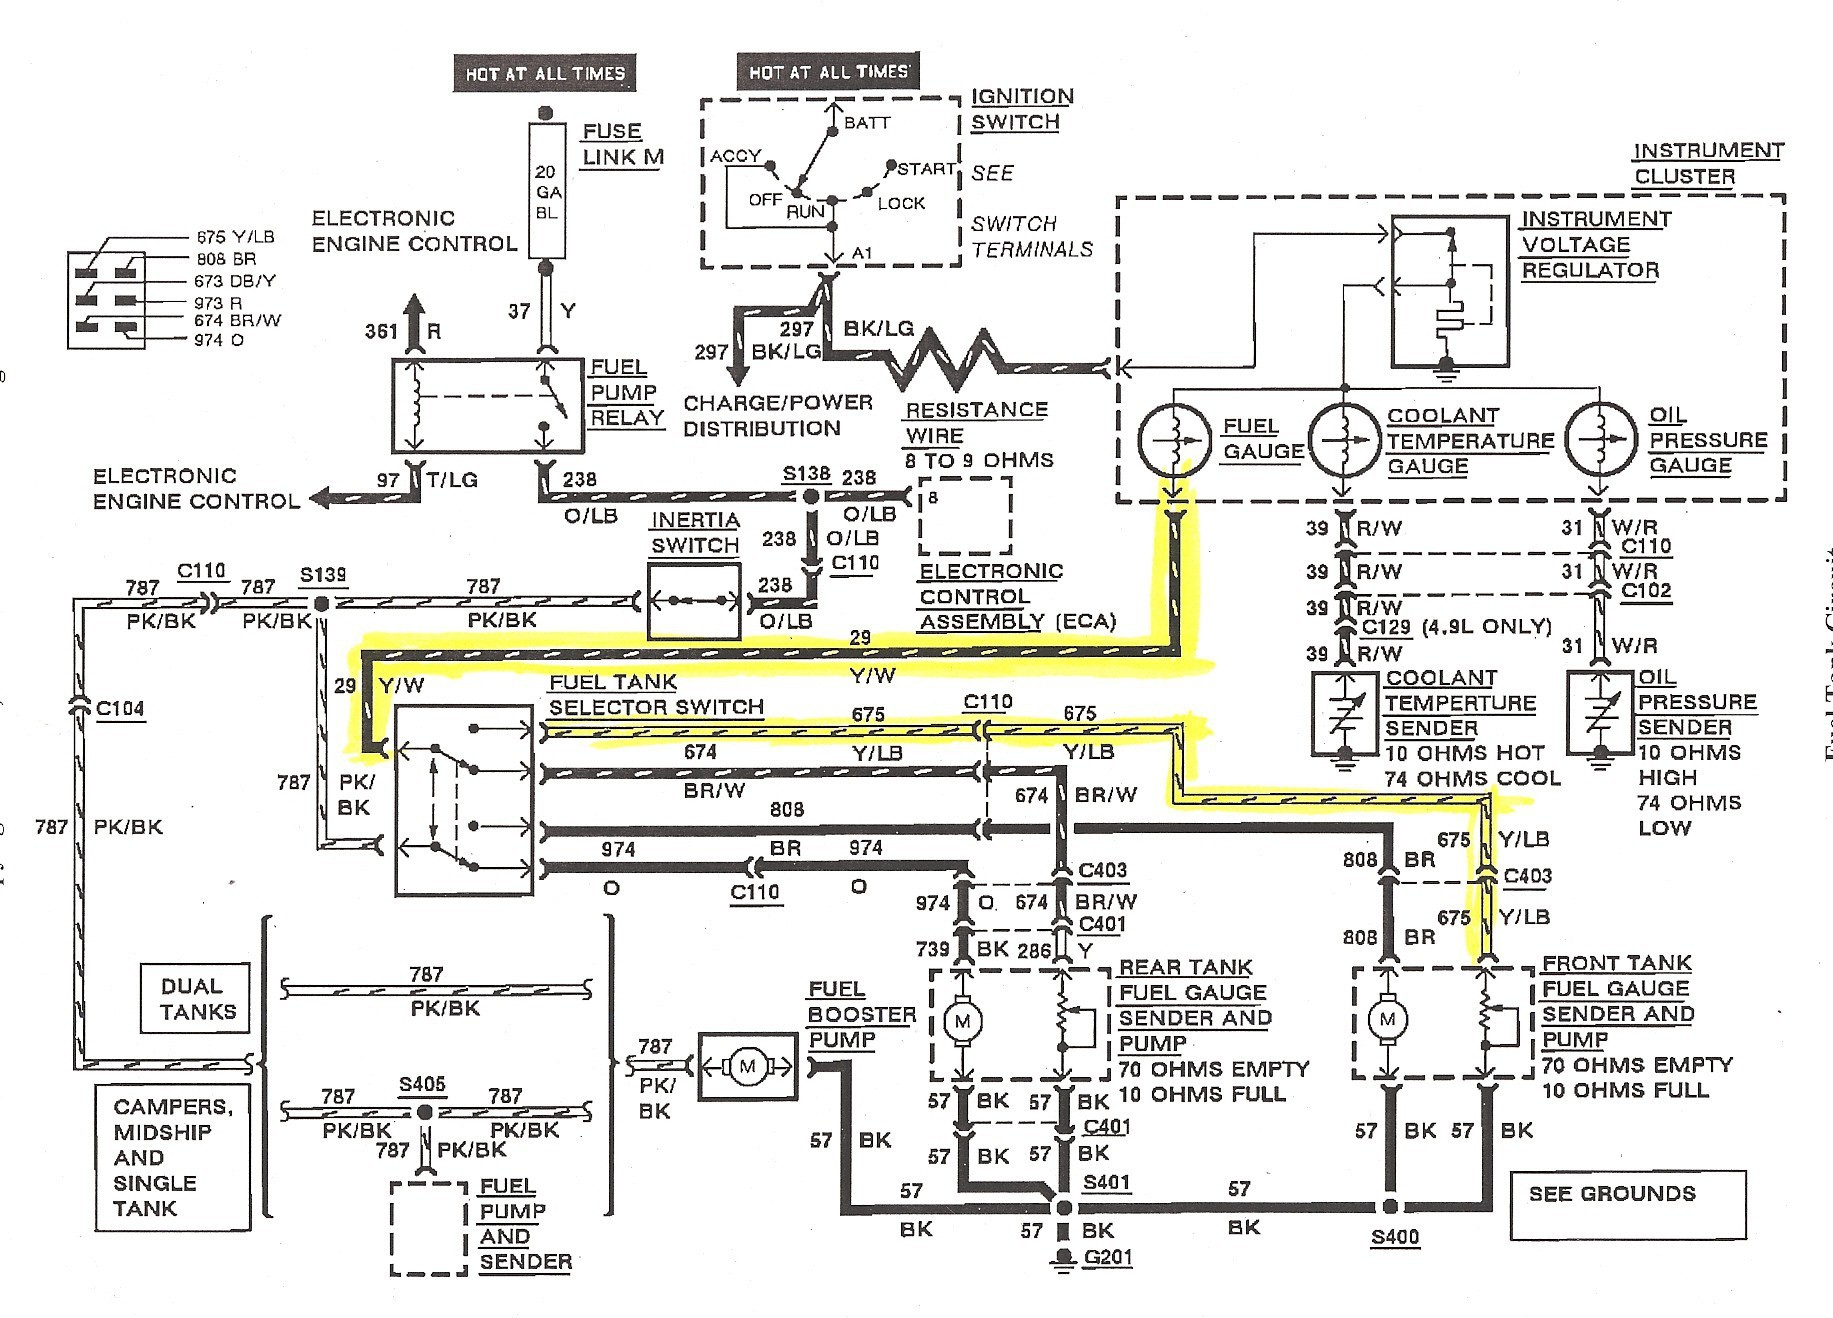 hk42fz009 wiring diagram Download hk42fz009 wiring diagram sample wiring diagram sample rh faceitsalon 1996 Ford DOWNLOAD Wiring Diagram